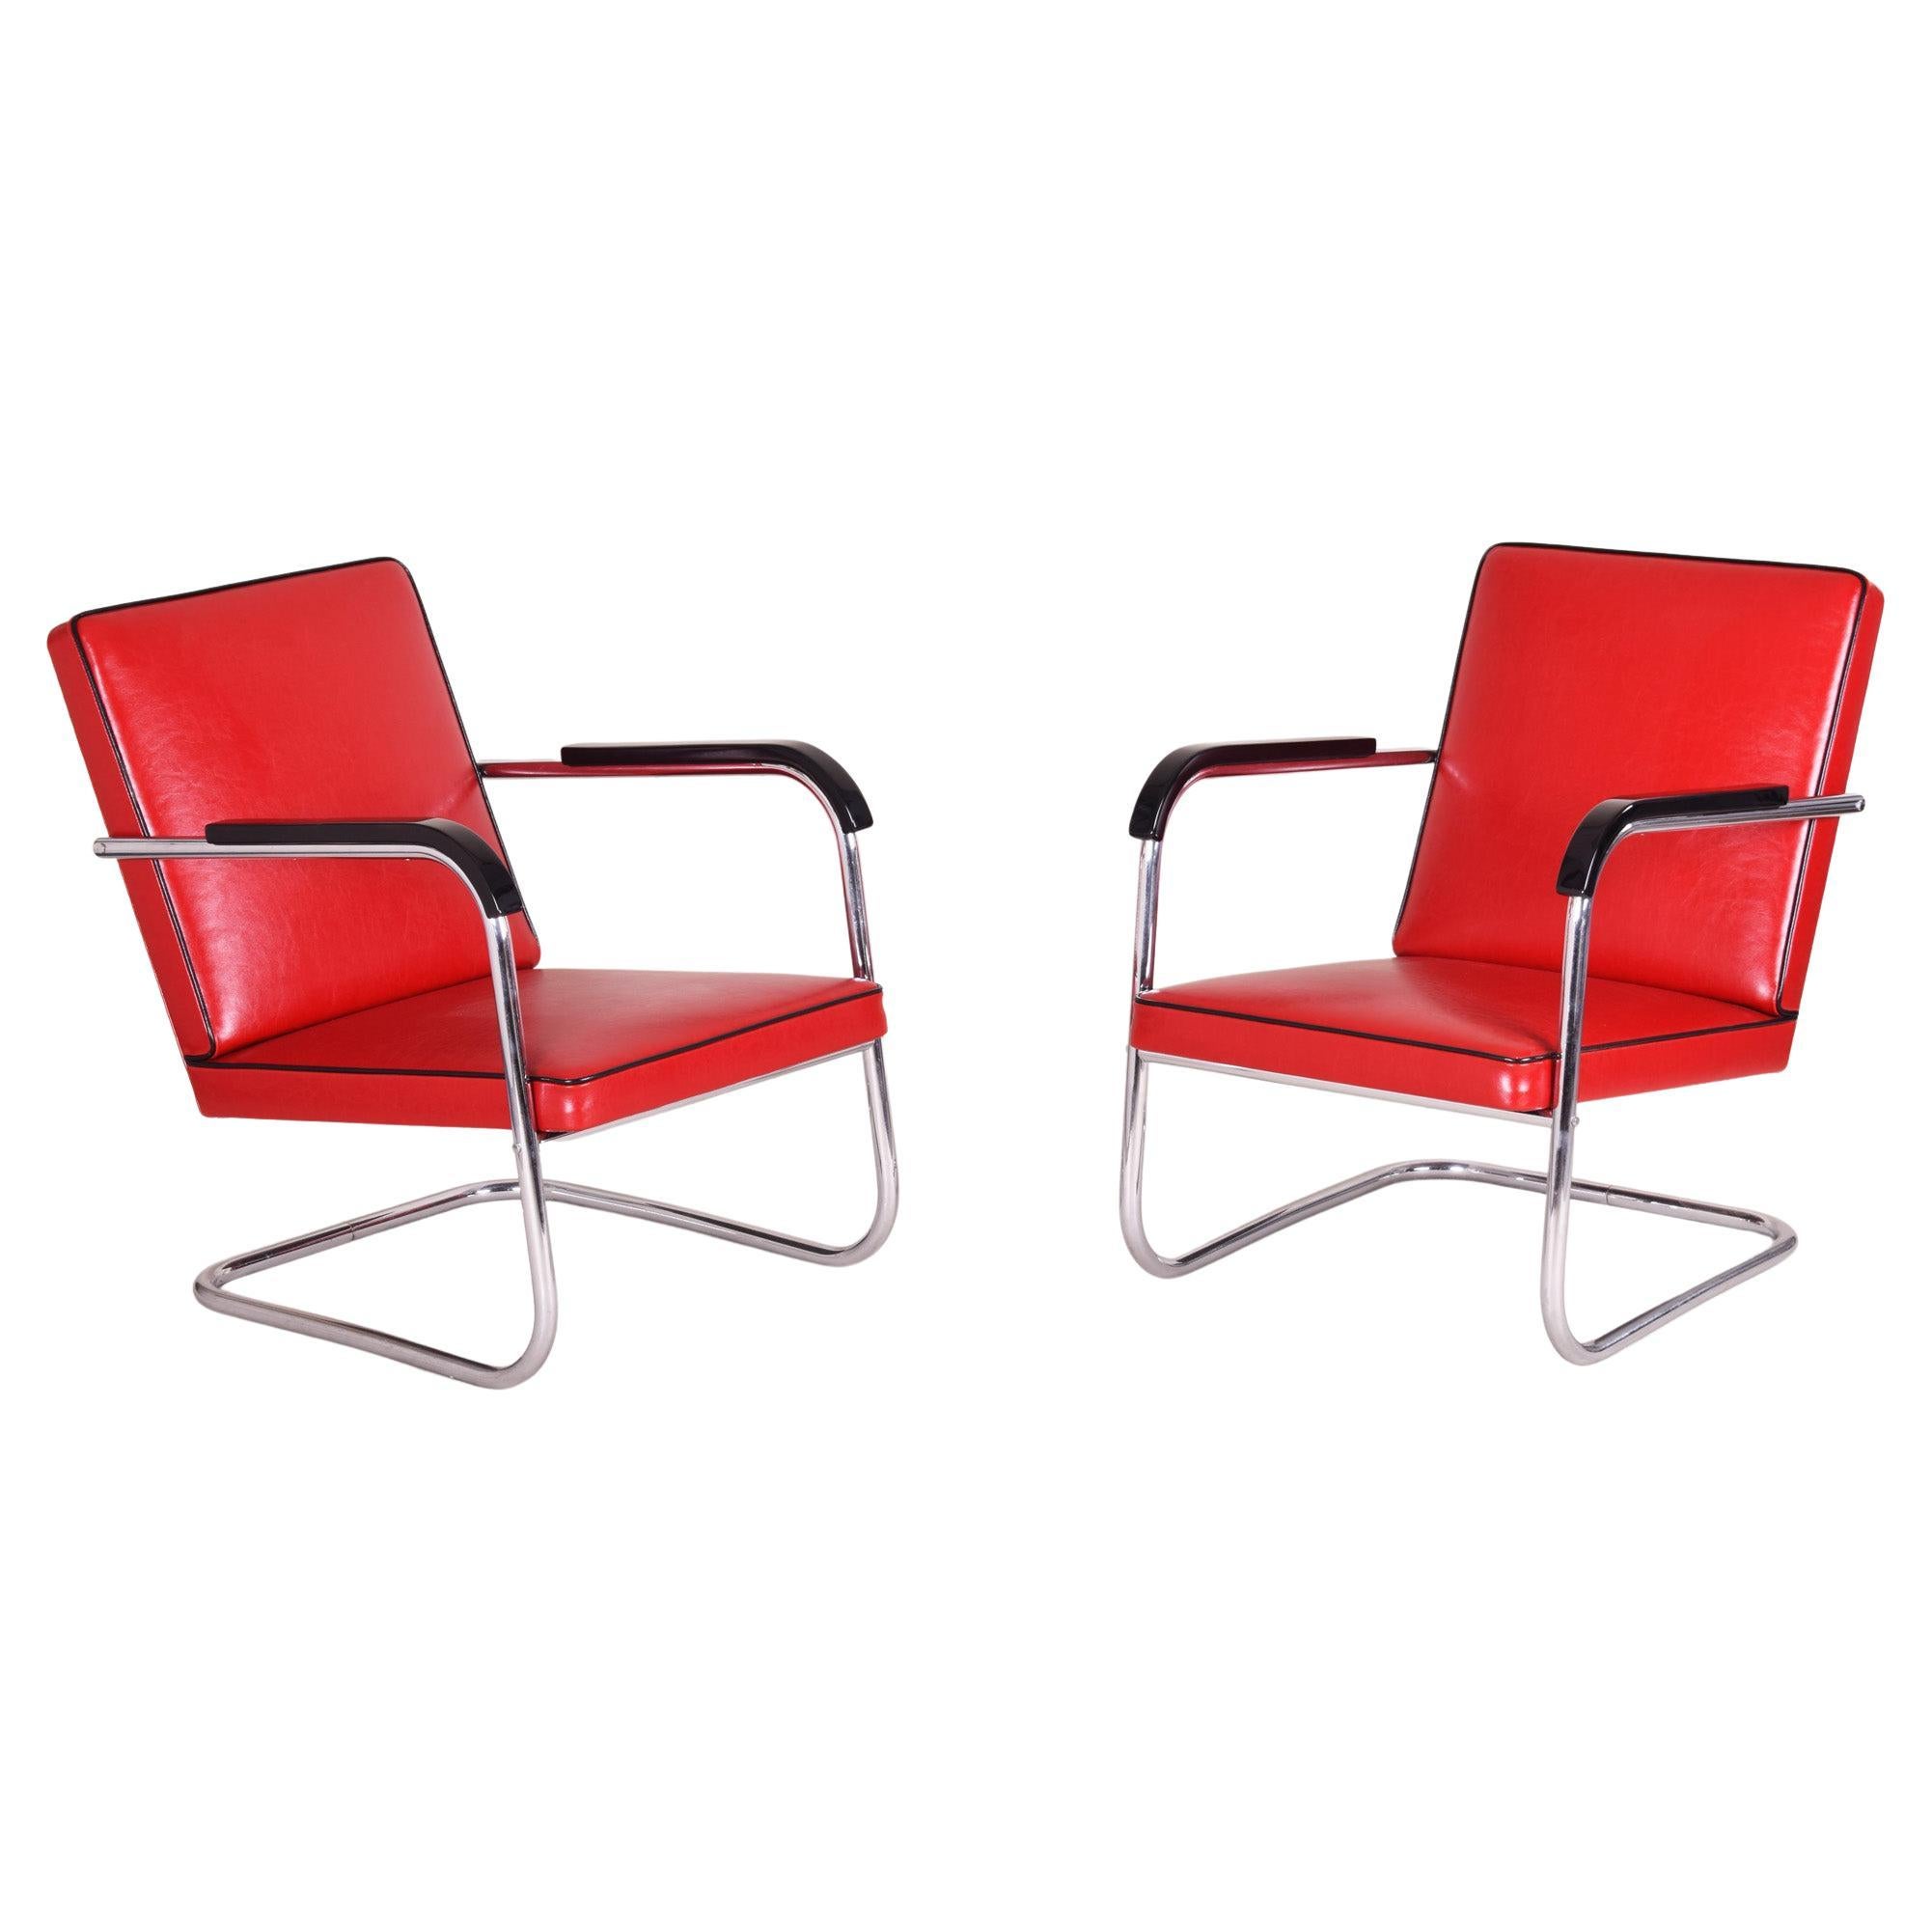 Paire de fauteuils Bauhaus rouges fabriqués en Allemagne dans les années 30, conçus par Anton Lorenz